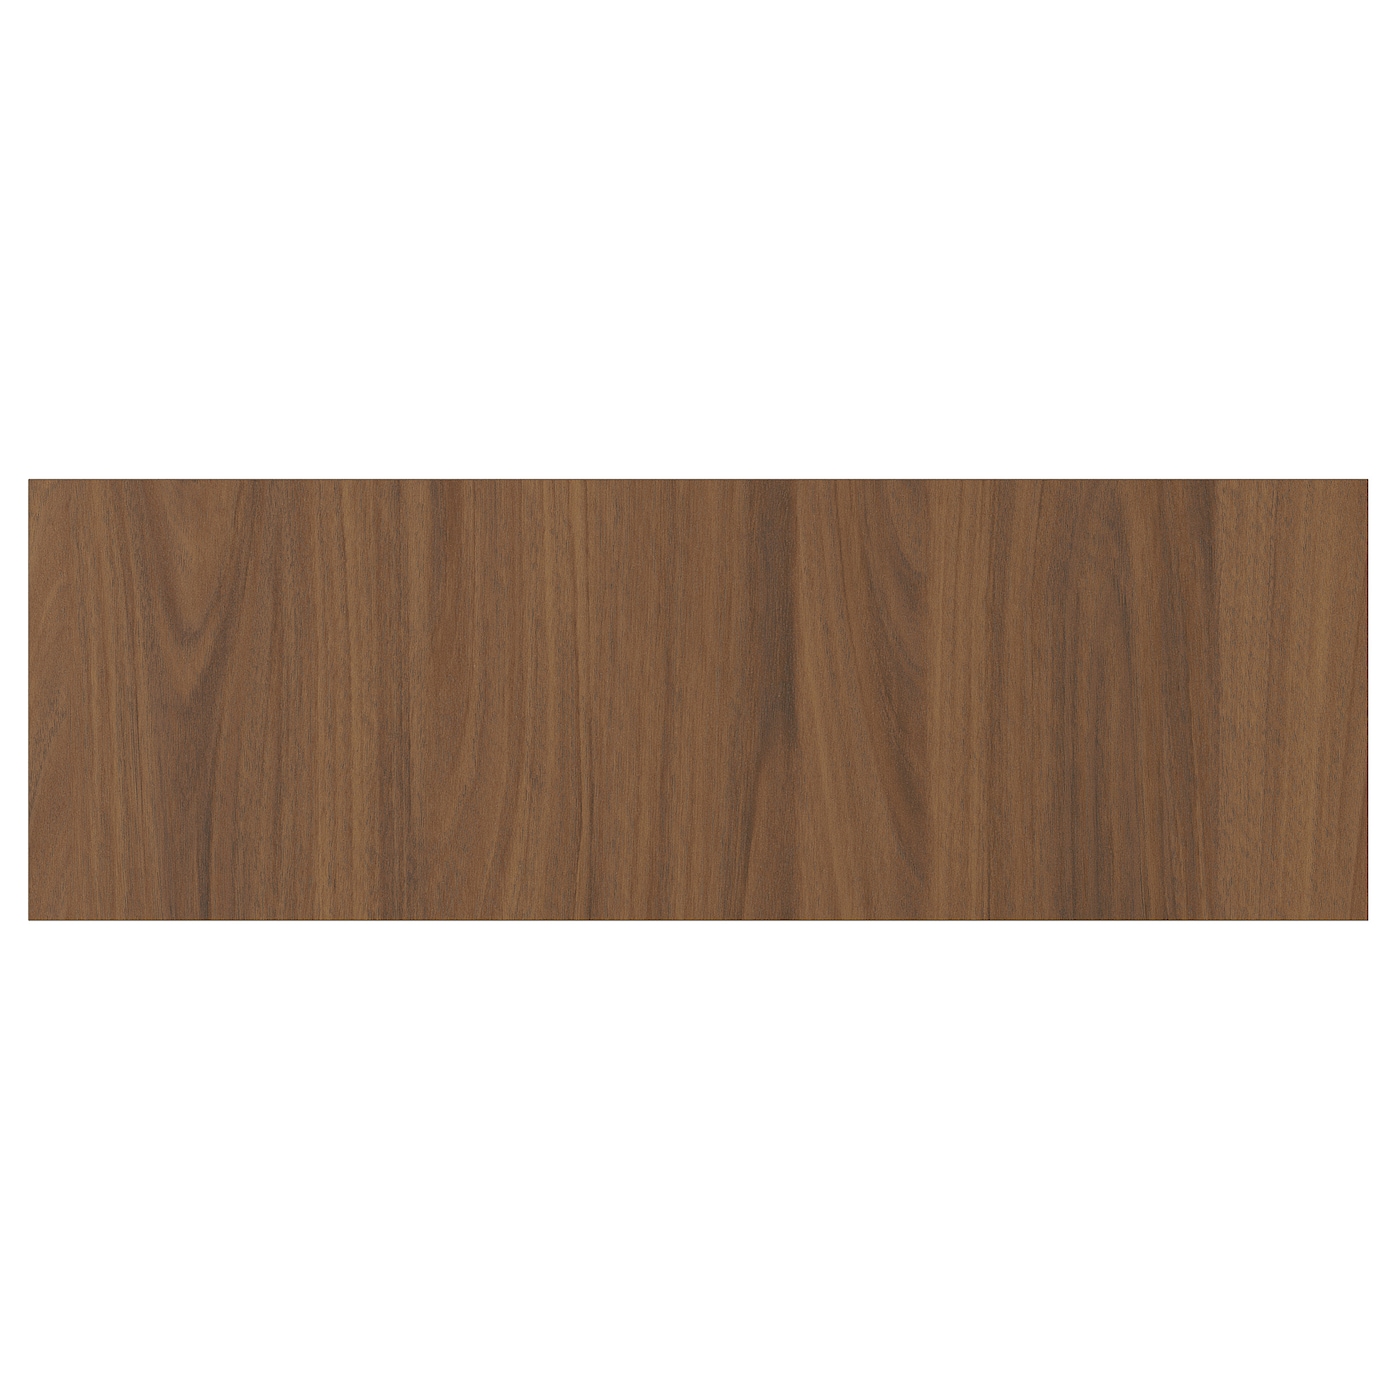 Дверца  - TISTORP IKEA/ ТИСТОРП ИКЕА,  60х20 см, коричневый